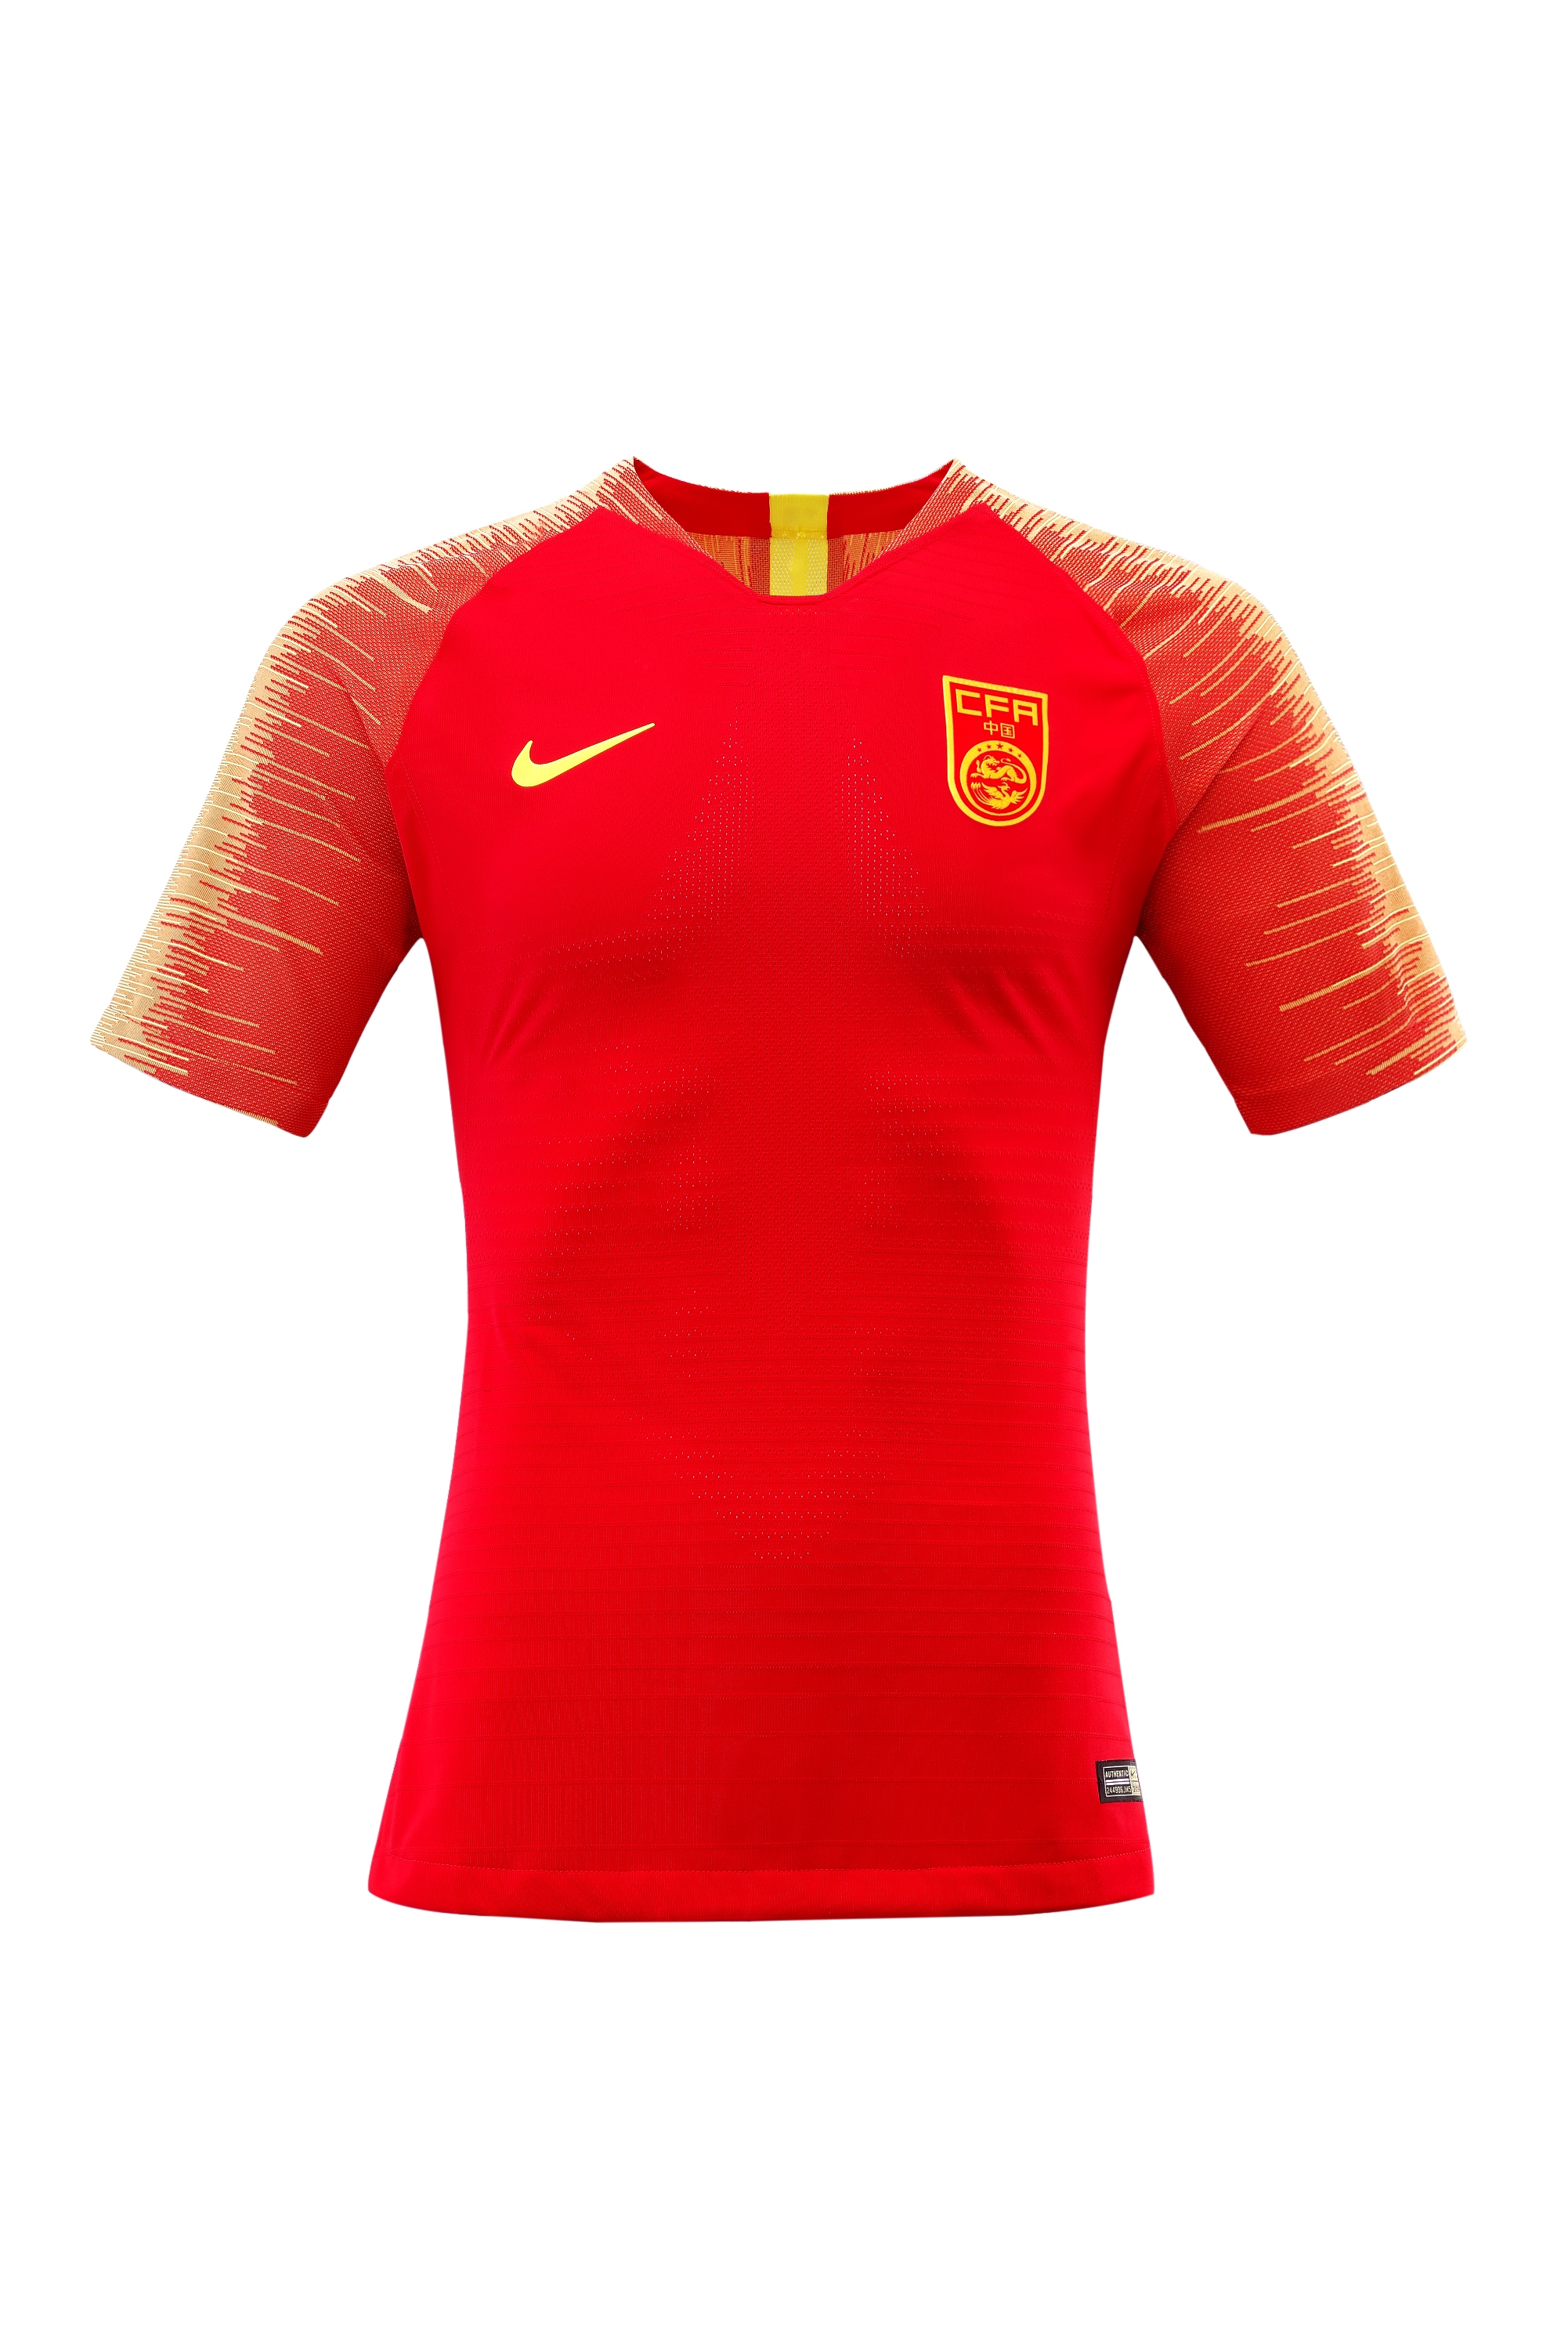 中国之队全新足球系列服装彰显壮志雄心